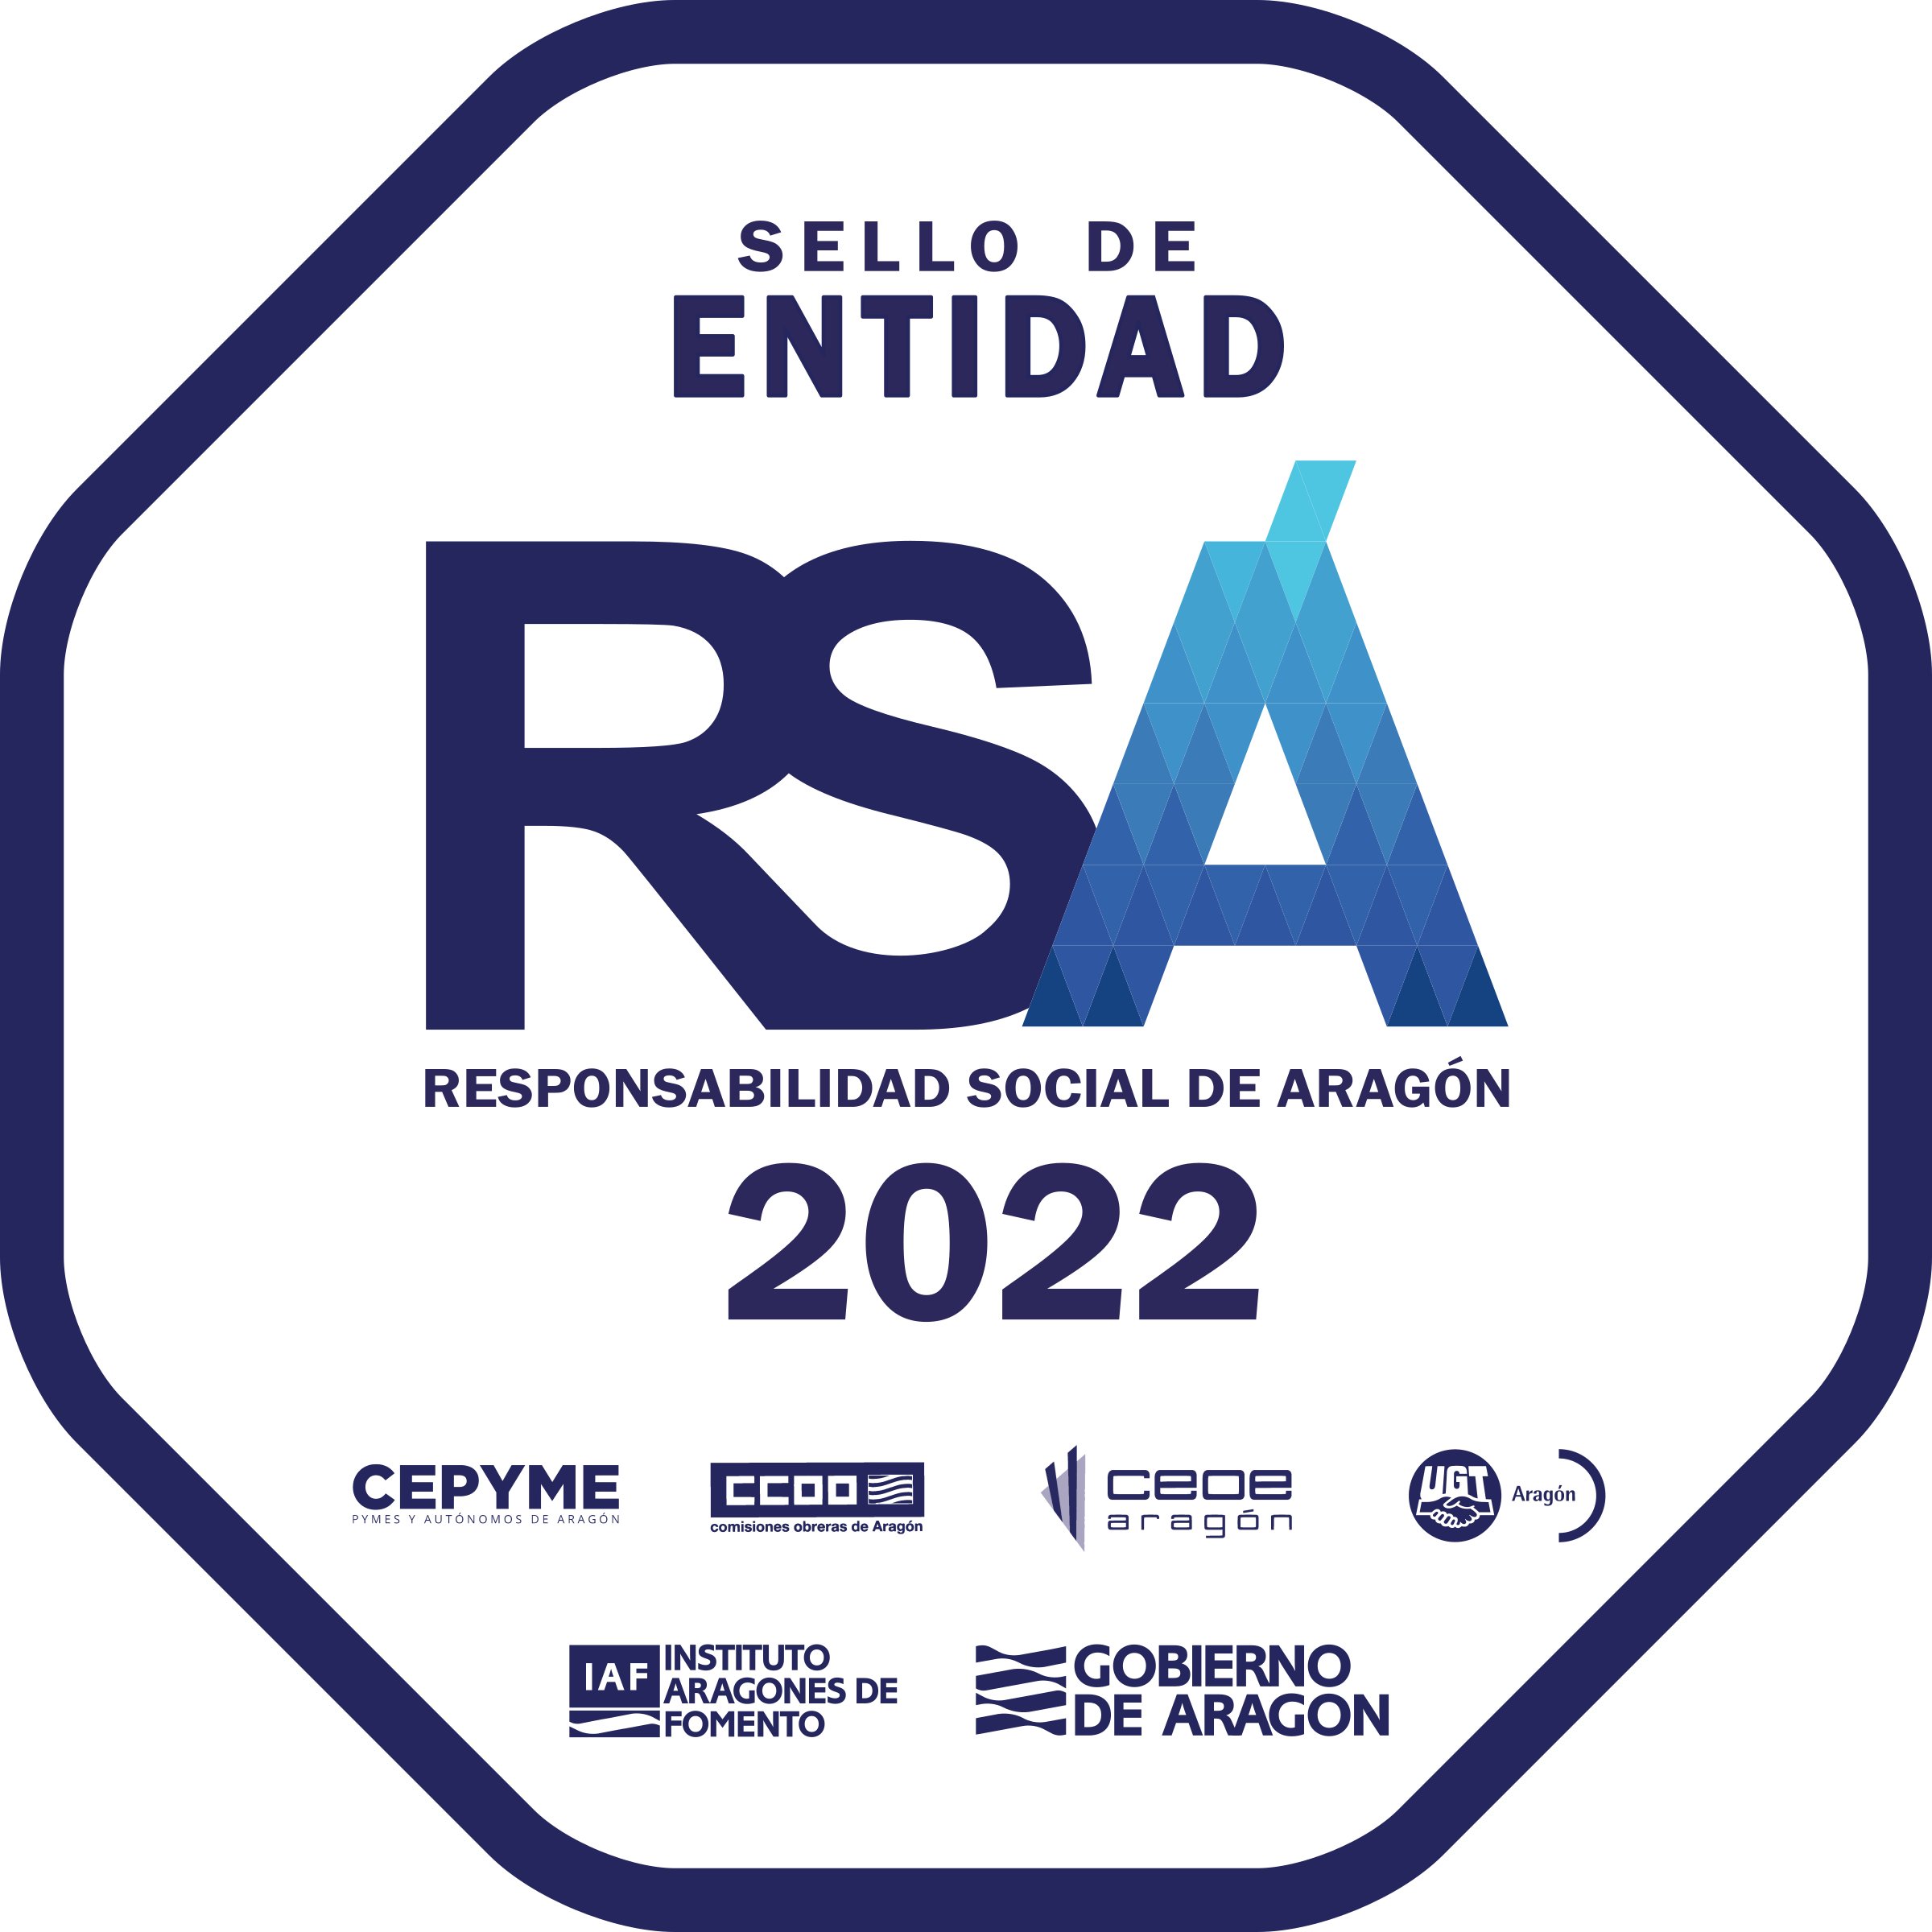 Logotipo Sello de entidad RSA